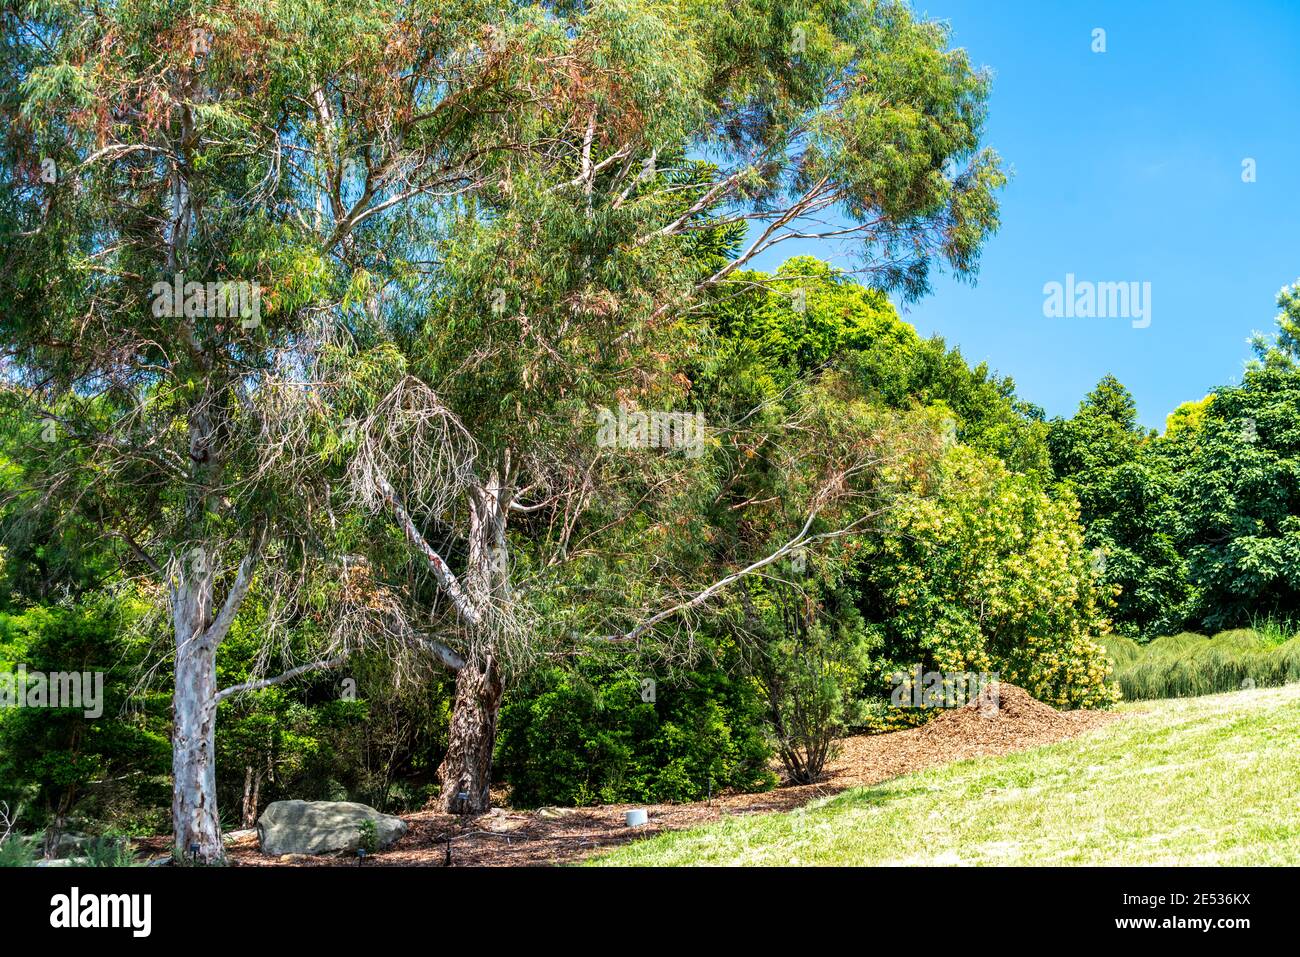 Un jardín de árboles nativos australianos Foto de stock